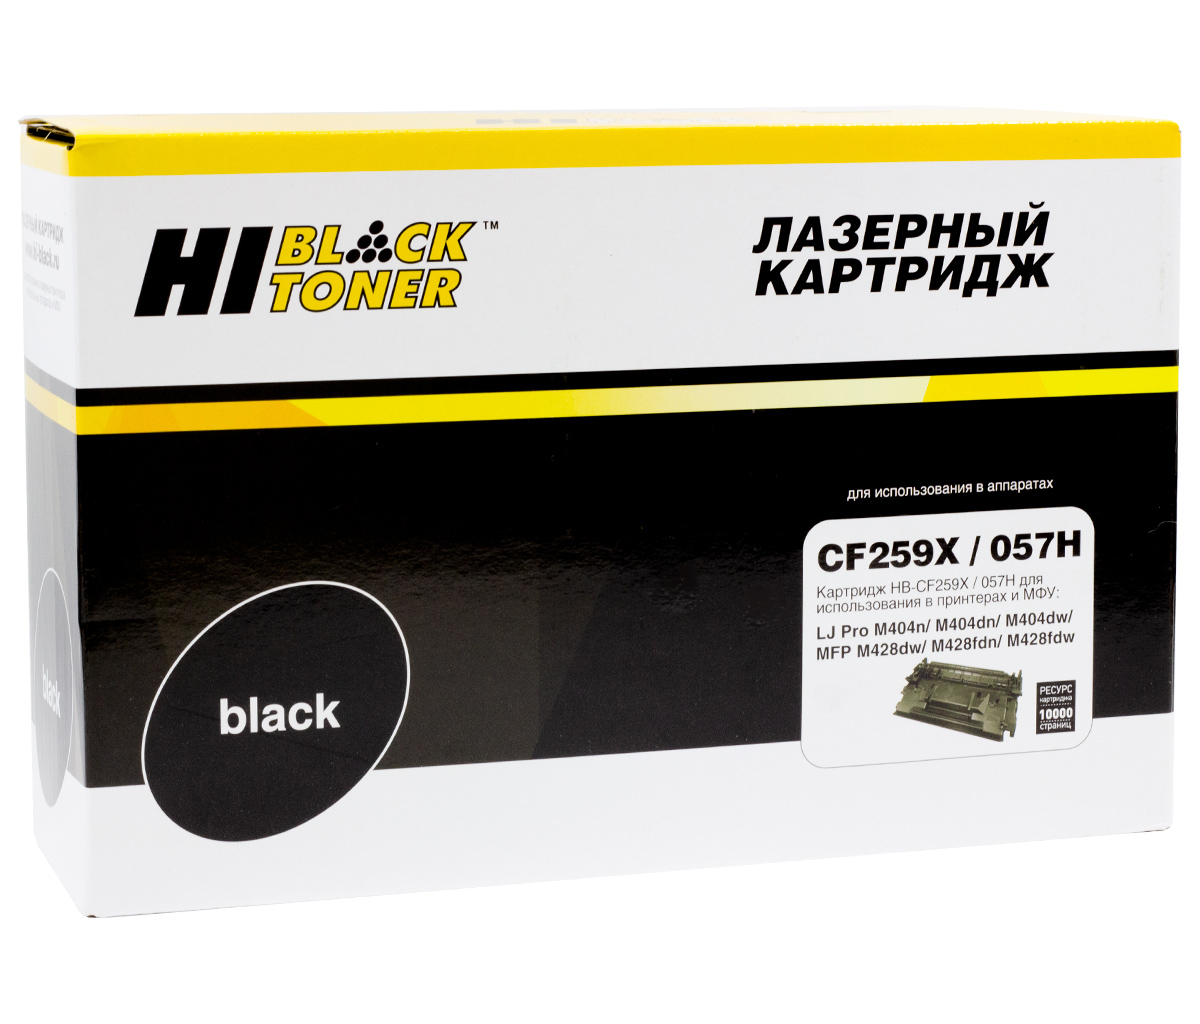 Картридж лазерный Hi-Black (HB-CF259X/ 057H) для HP LJ Pro M304/ 404n/ MFP M428dw/ Canon MF-443/ MF-445, чёрный (10000 стр.)